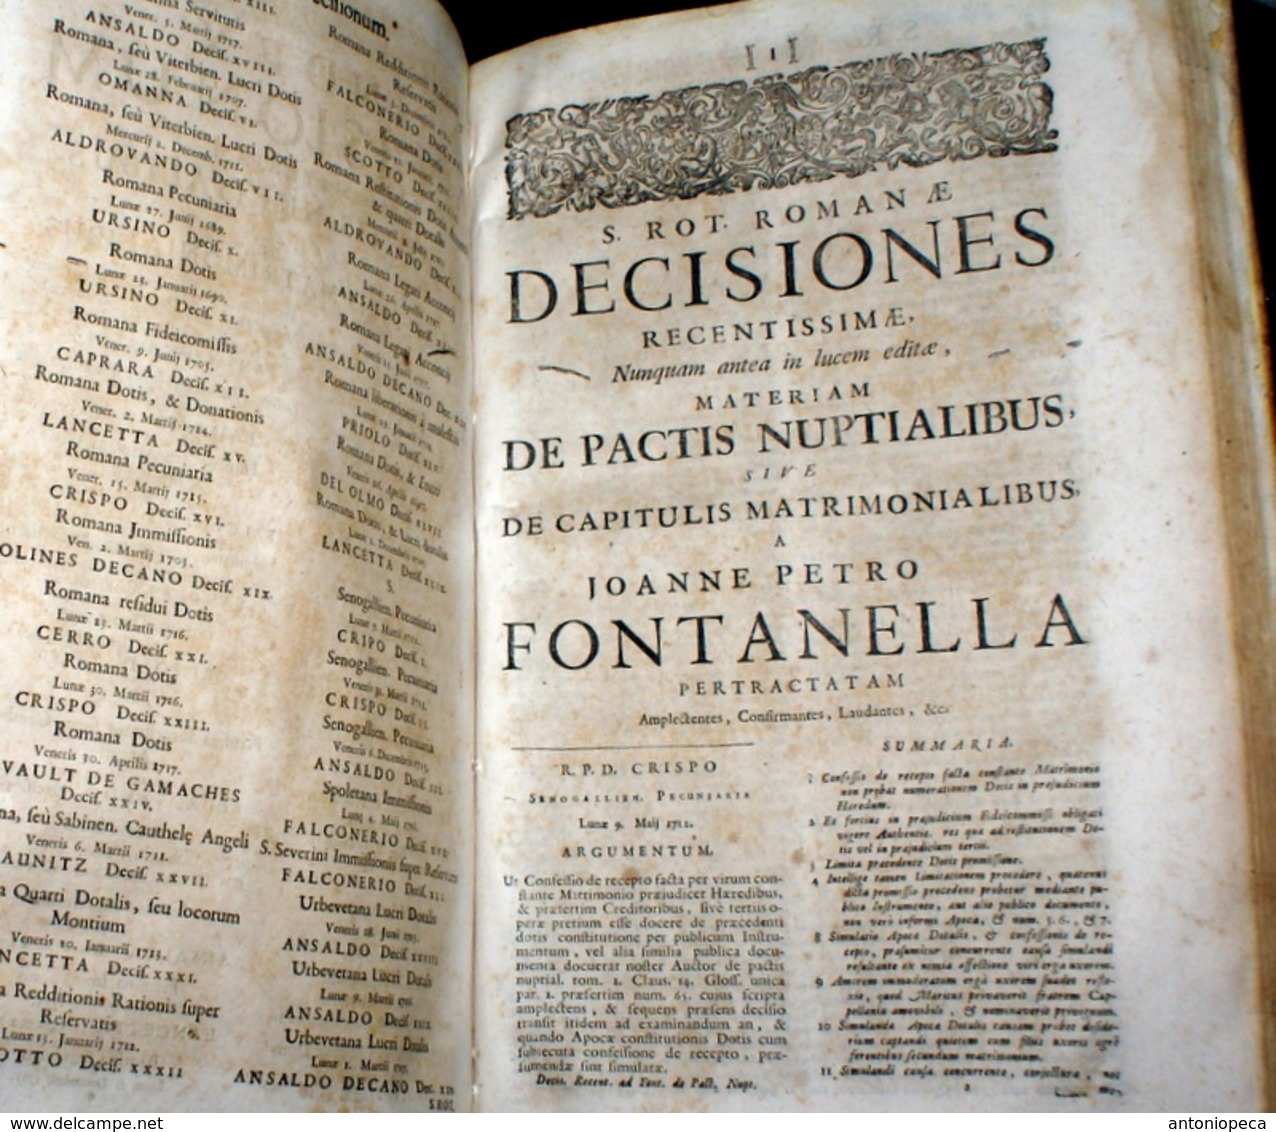 LIBRO DEL 1719 DI JONNIS PETRI FONTANELLA "TRACTATUS DE PACTIS NUPTIALIBUS"